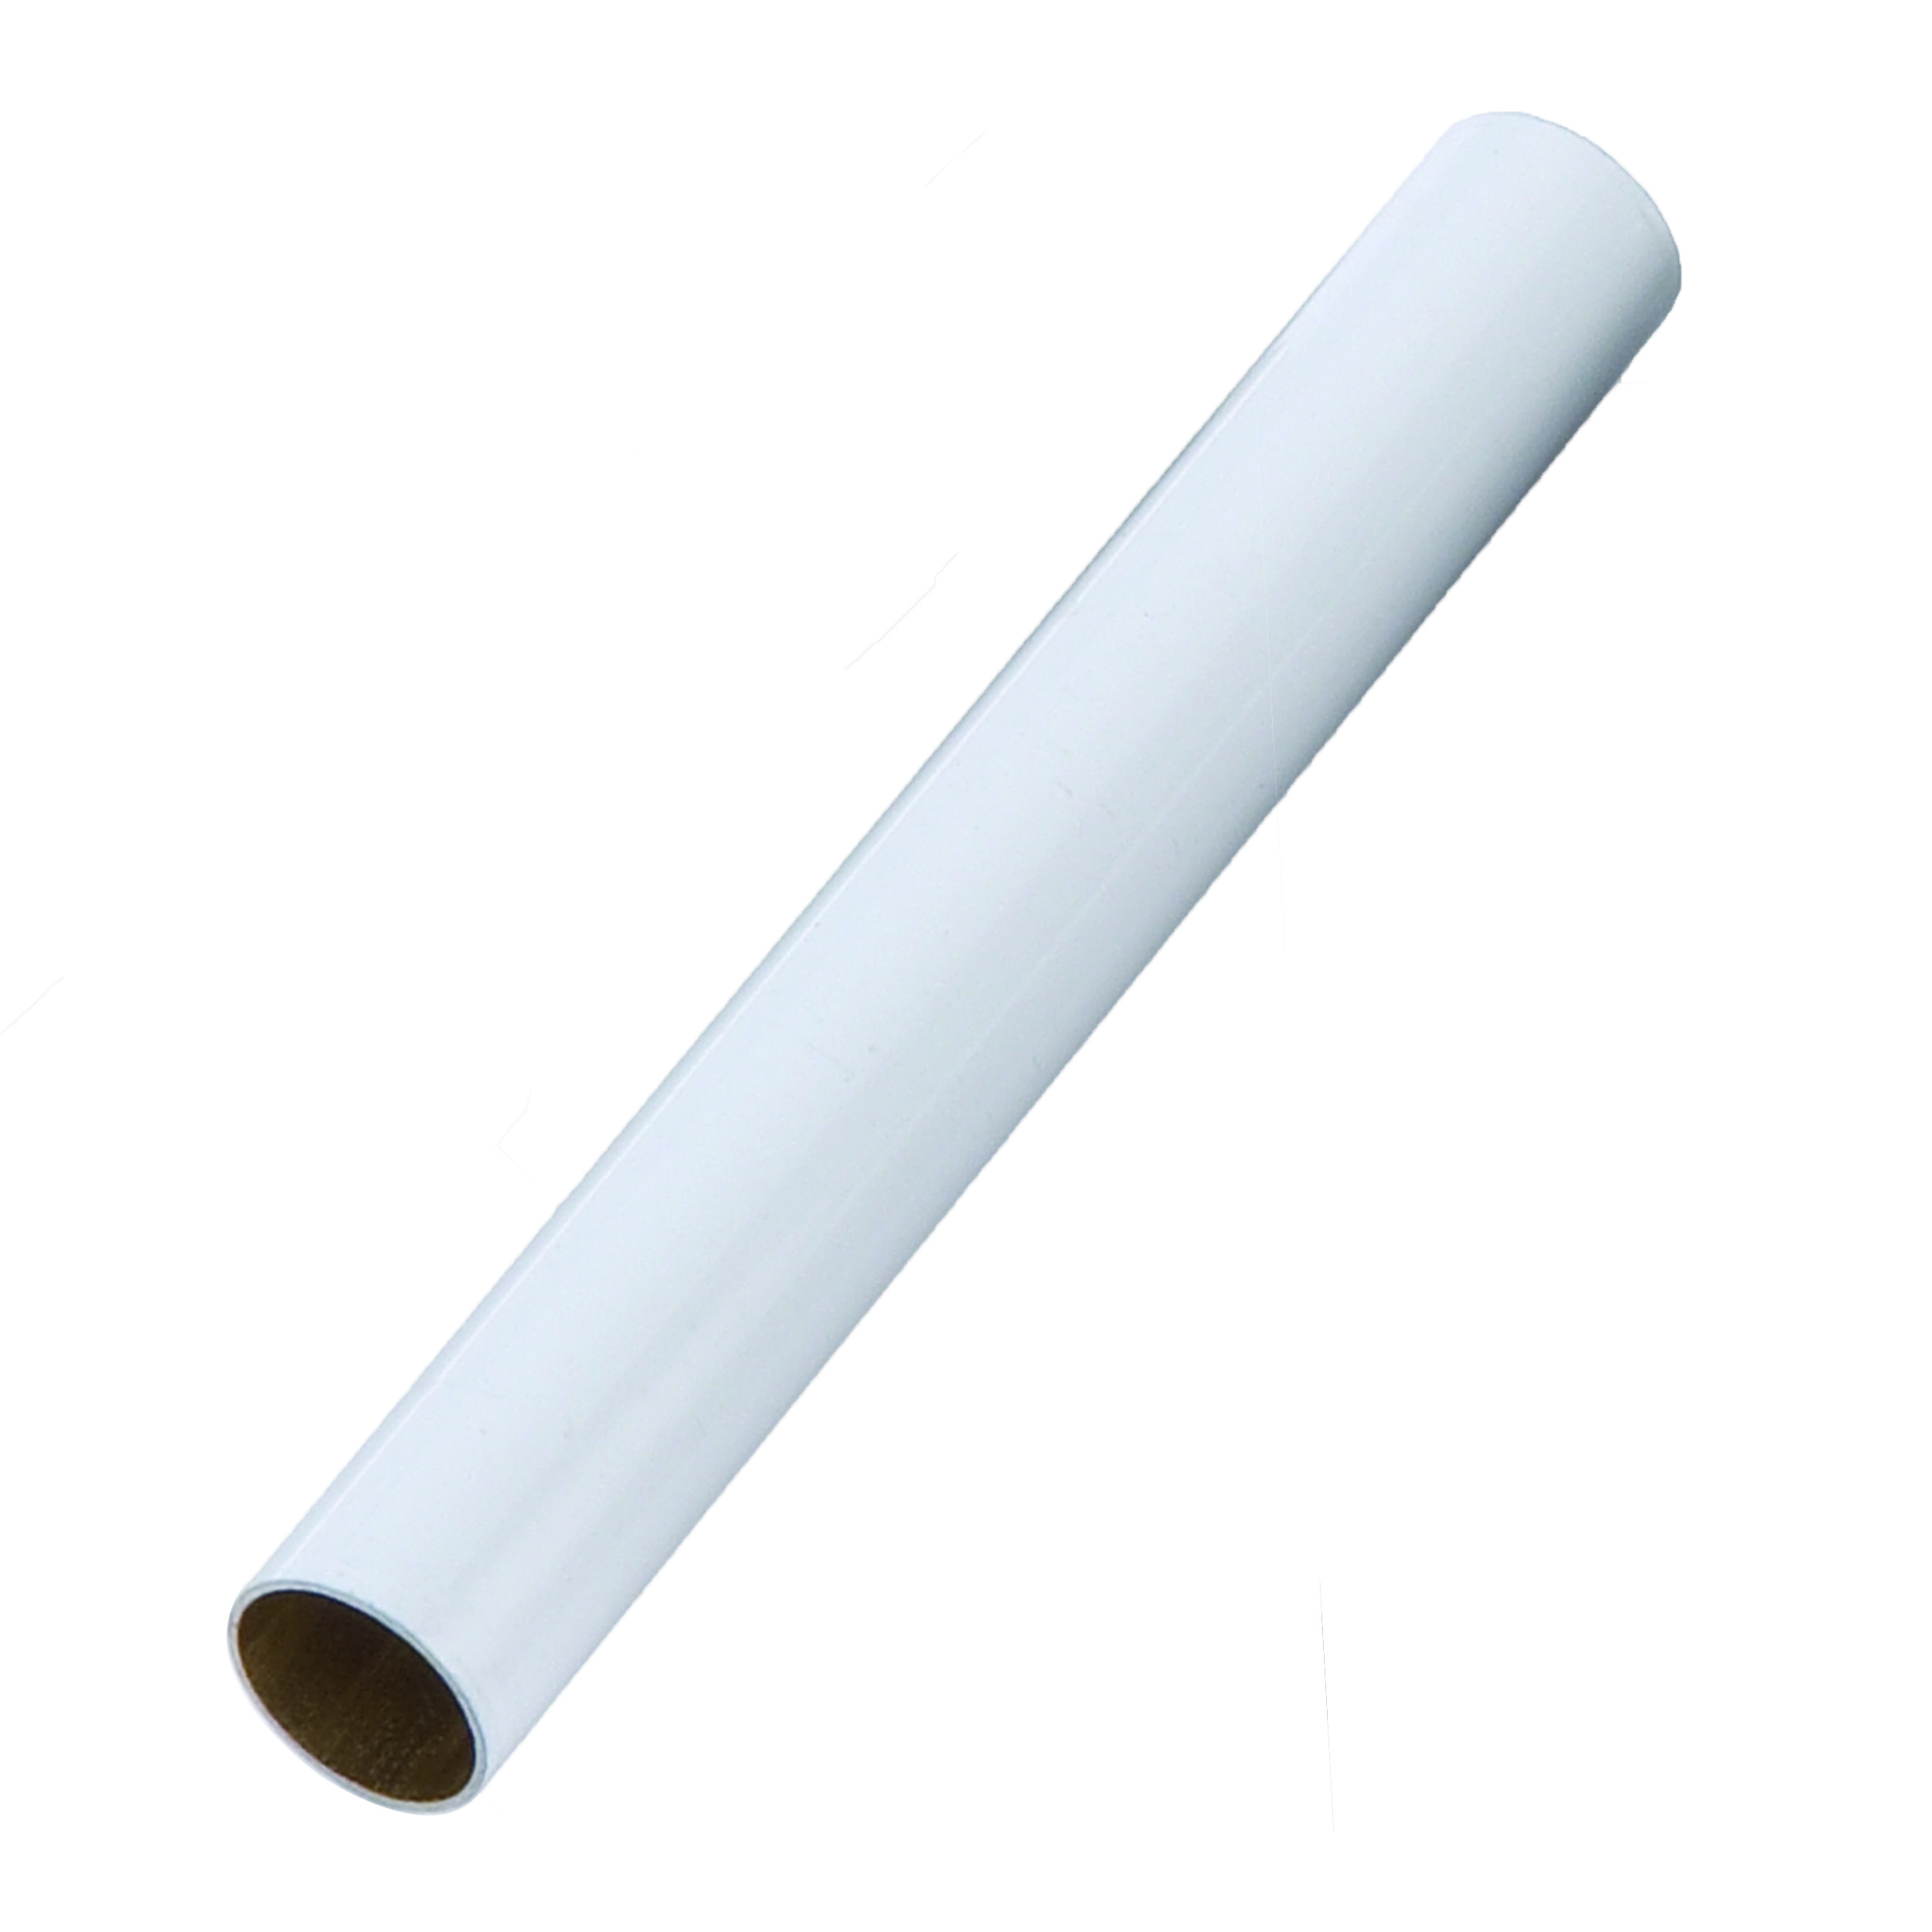 Euro Style Pen White Tubes 5 -pair